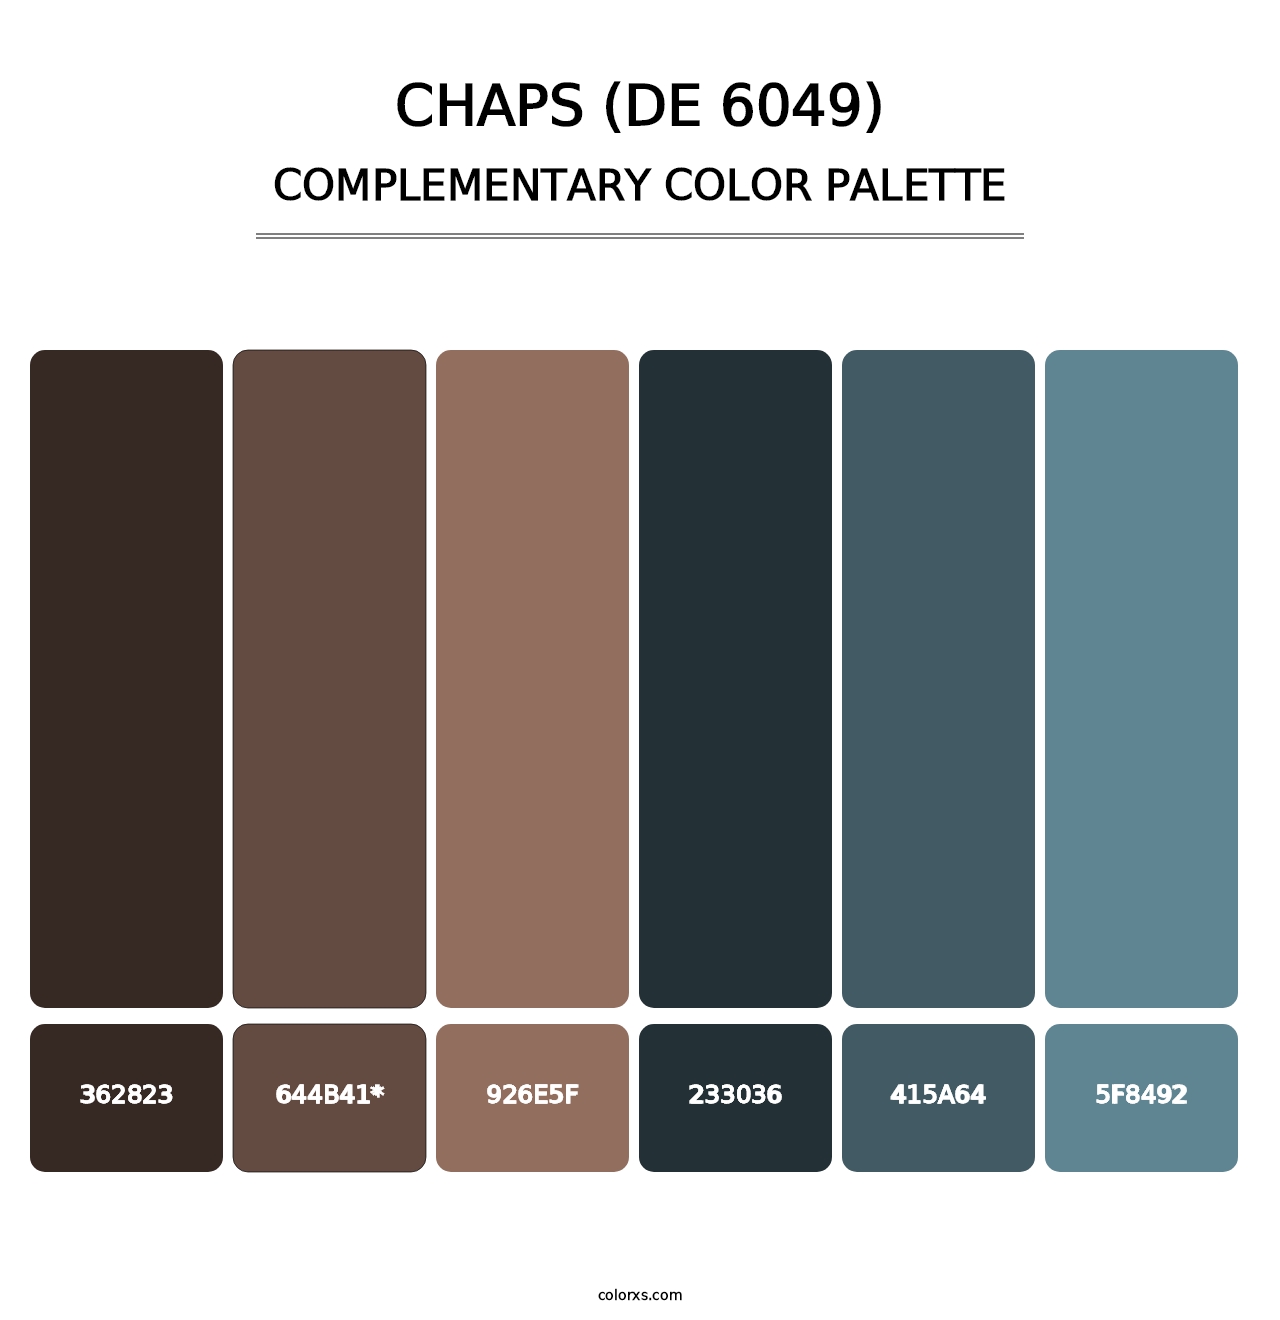 Chaps (DE 6049) - Complementary Color Palette